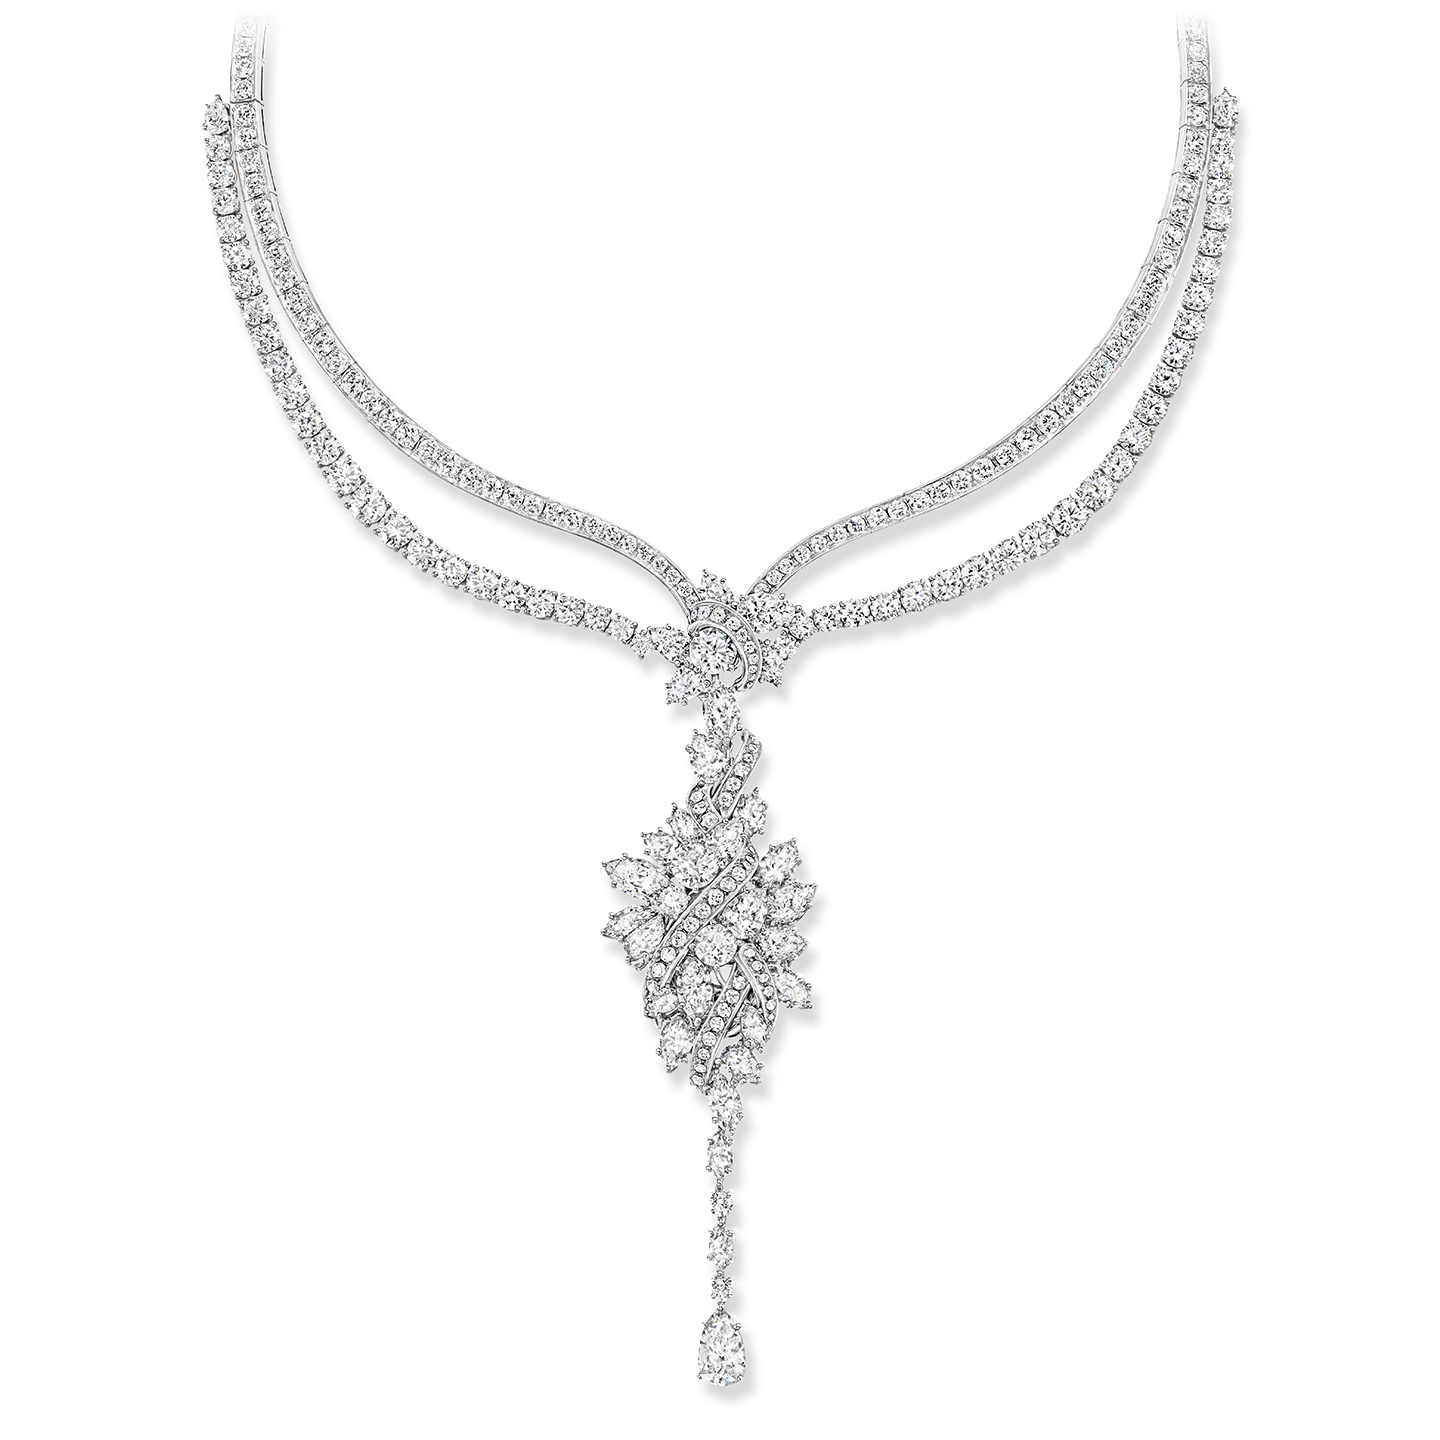 530 diamants taille marquise, poire et brillant, d'un poids total d'environ 81,85 carats, sertis sur platine.
Le pendentif cluster est un médaillon. Les éléments du collier Secret Cluster peuvent être portés en sept configurations différentes.